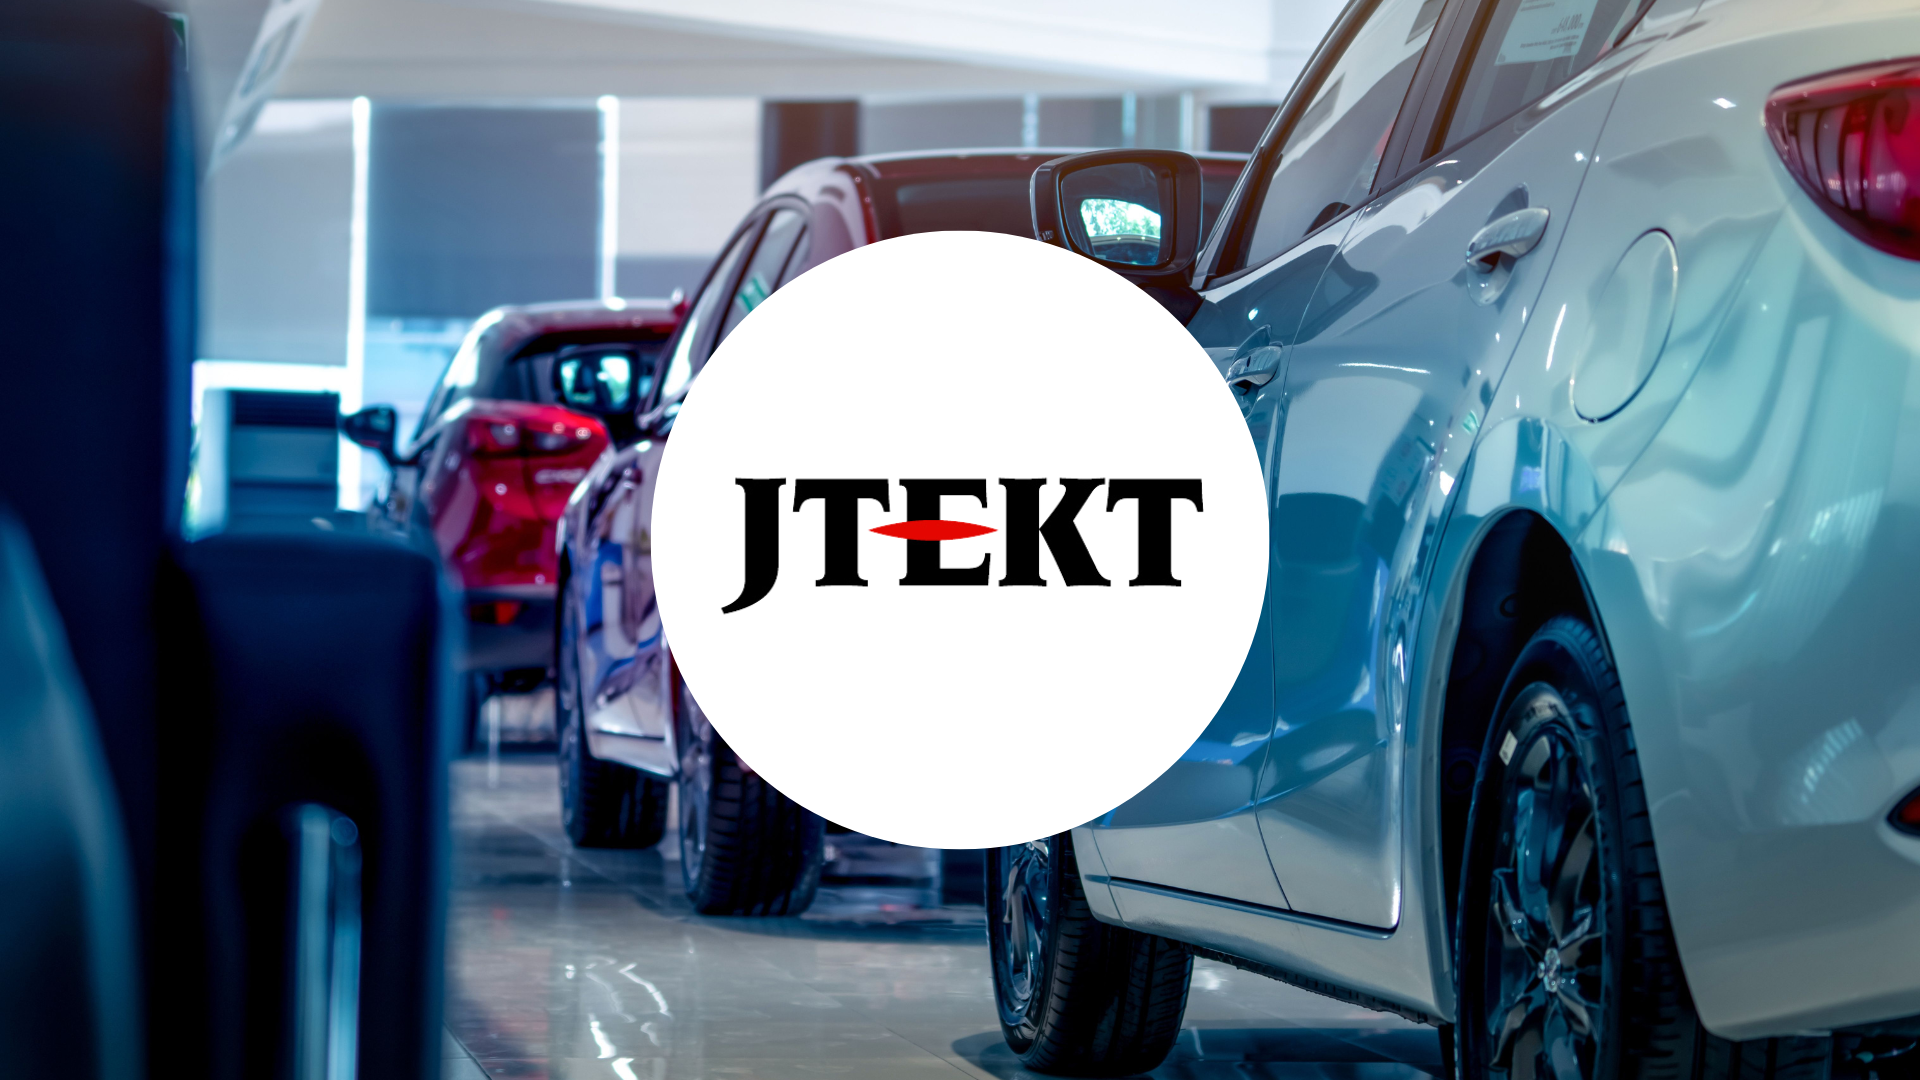 Voitures rouge et bleu garées en ligne avec le logo JTEKT